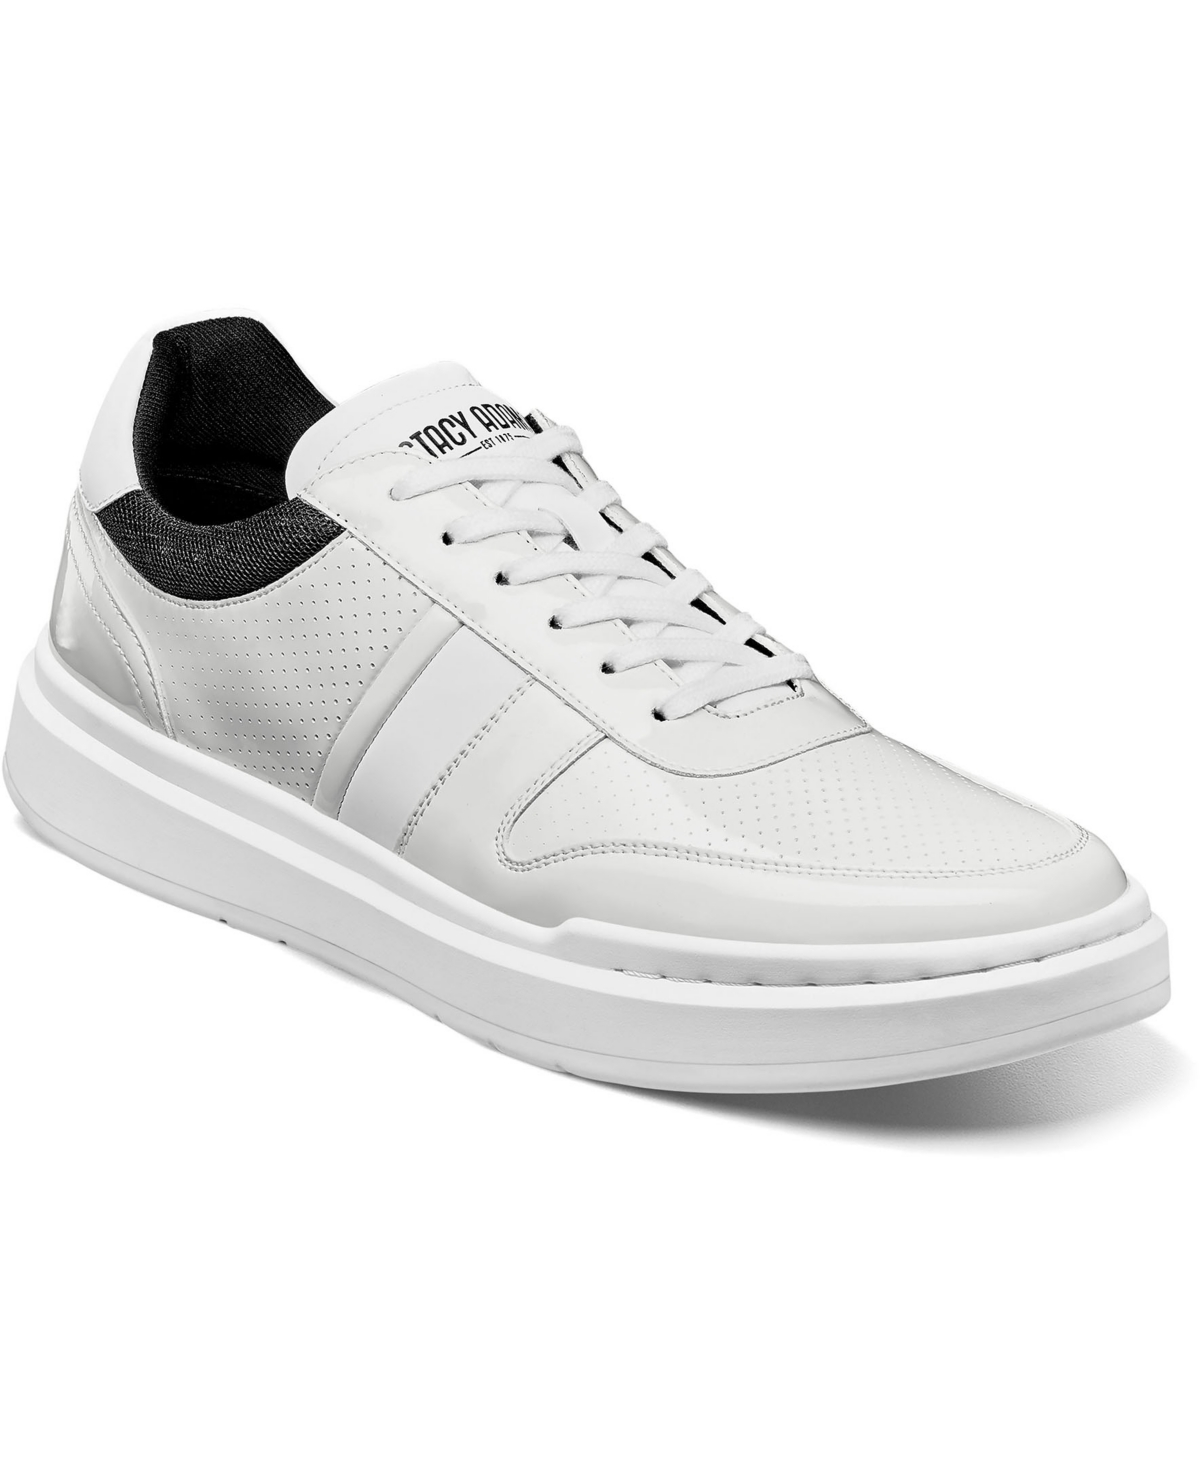 Men's Cashton Moc Toe Lace Up Sneakers - White Patent